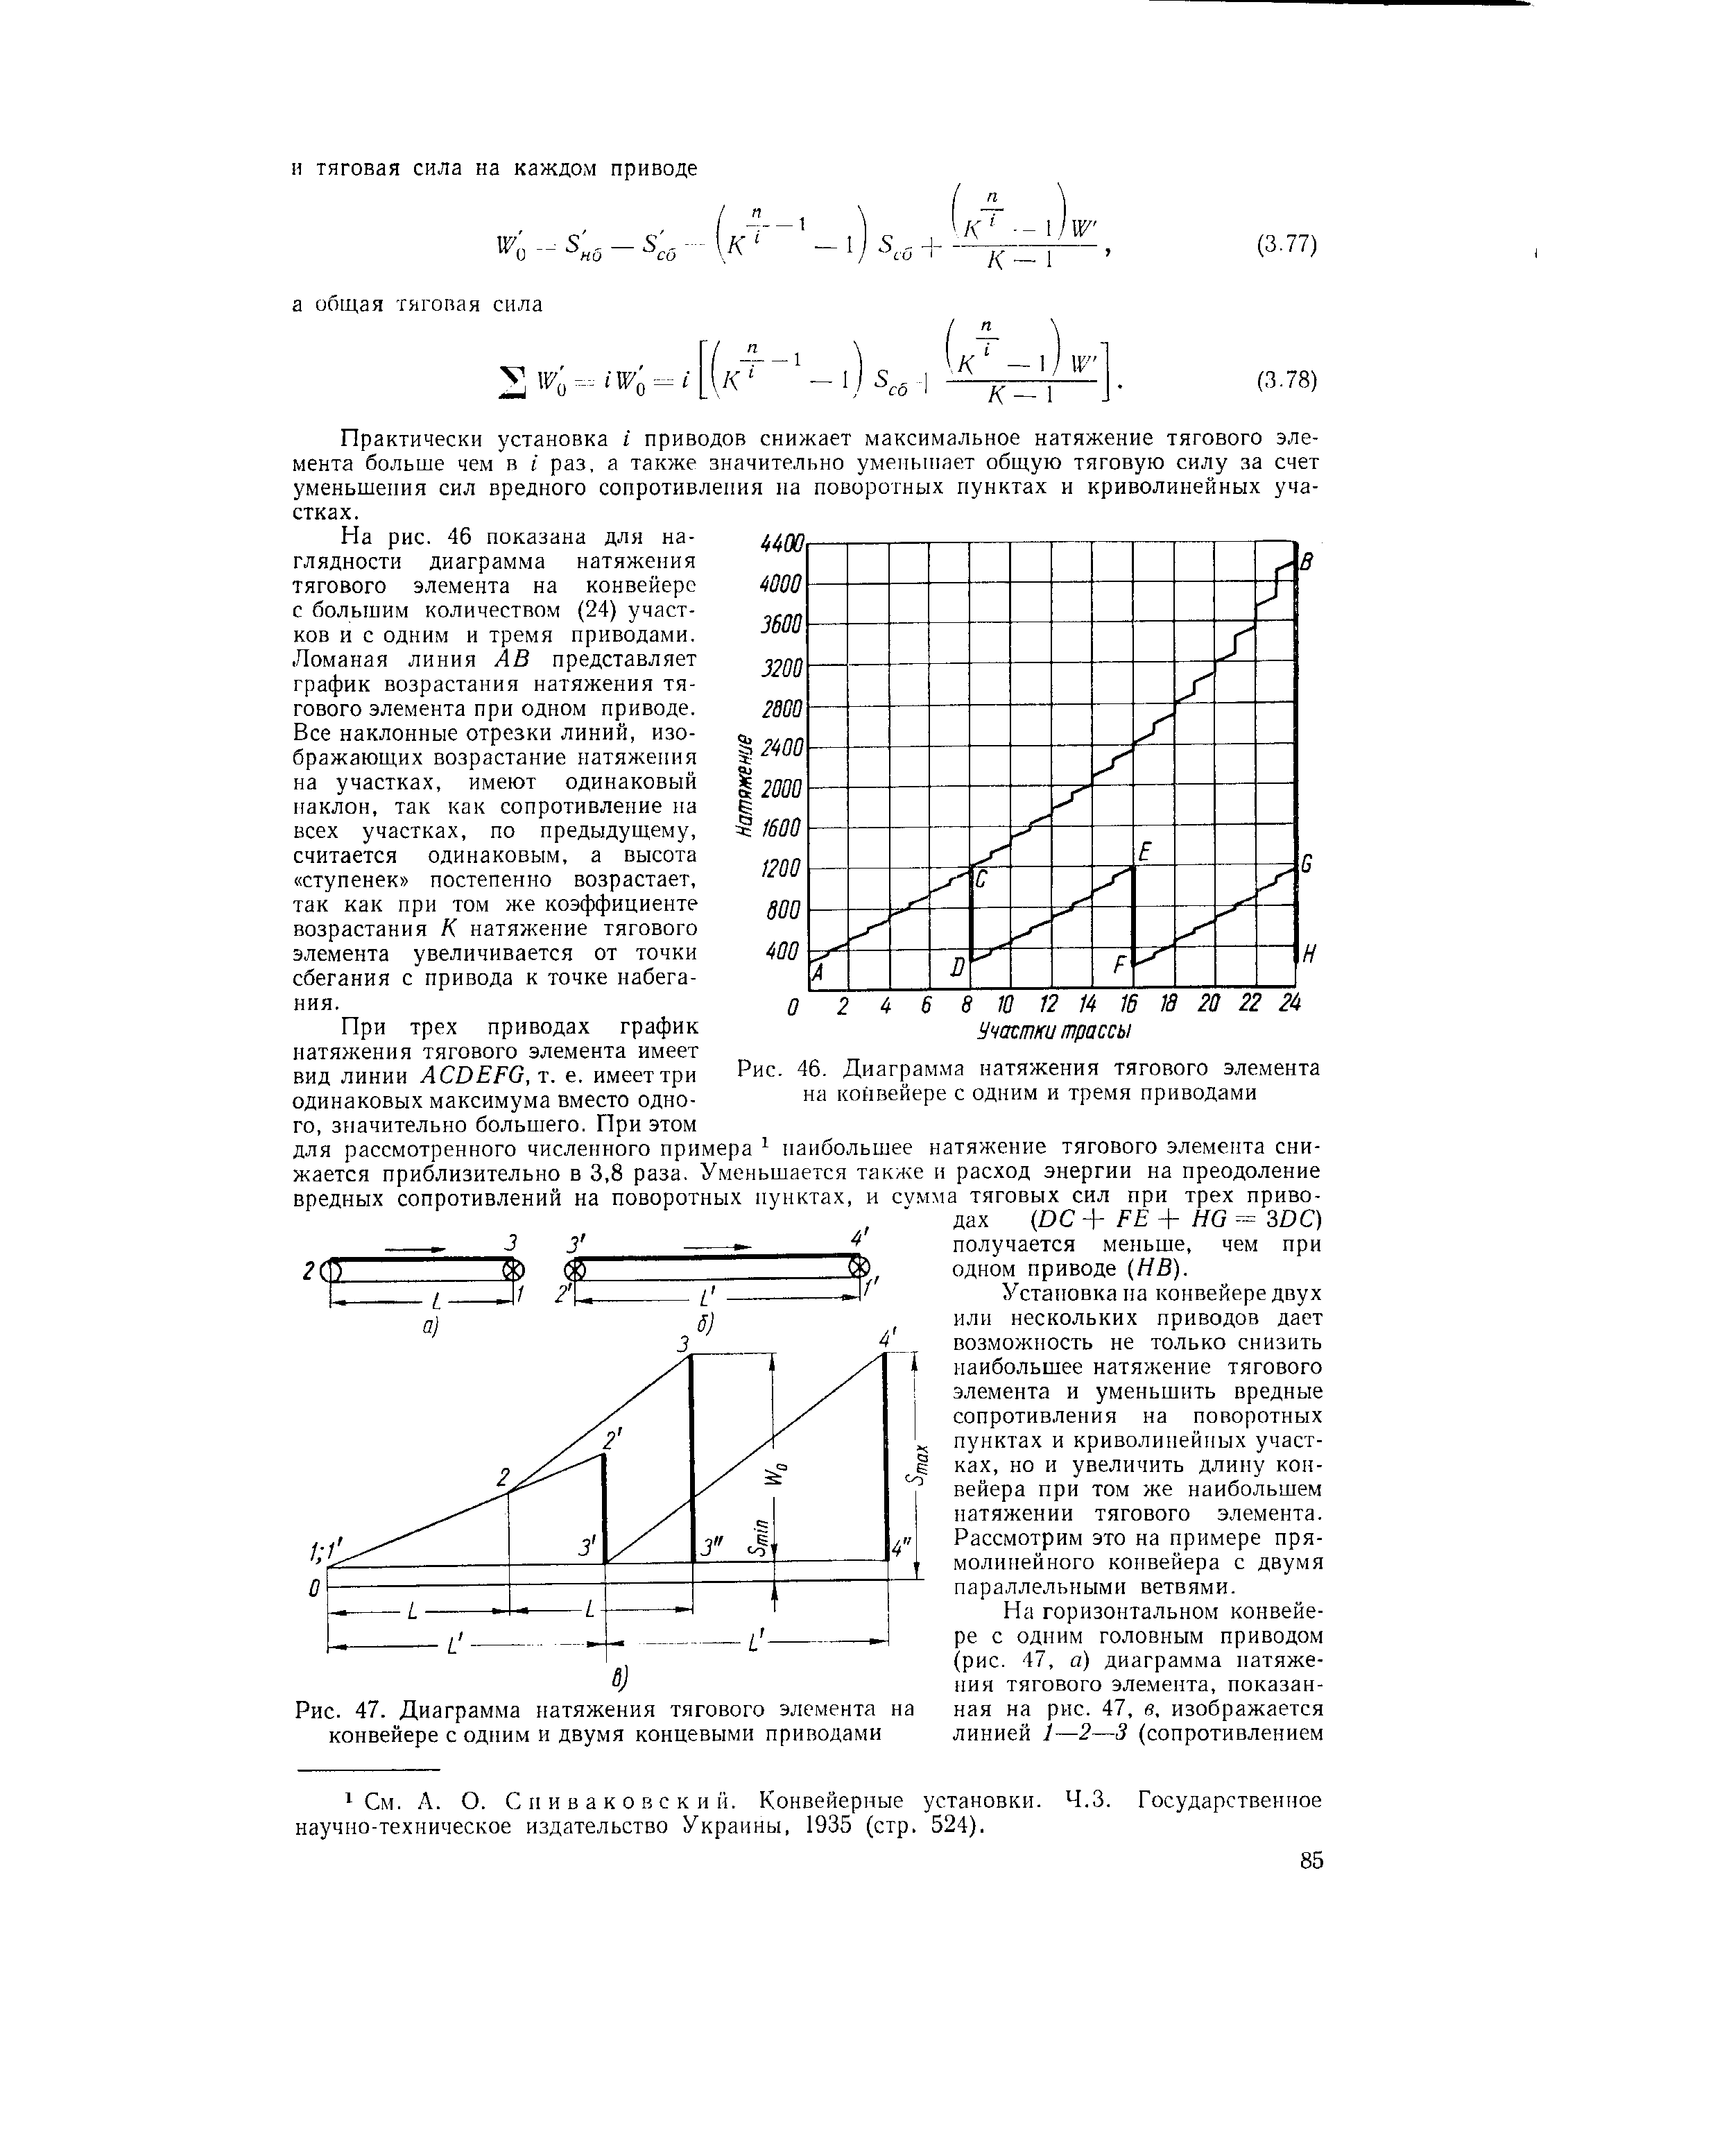 Рис. 46. Диаграмма натяжения тягового элемента на конвейере с одним и тремя приводами
